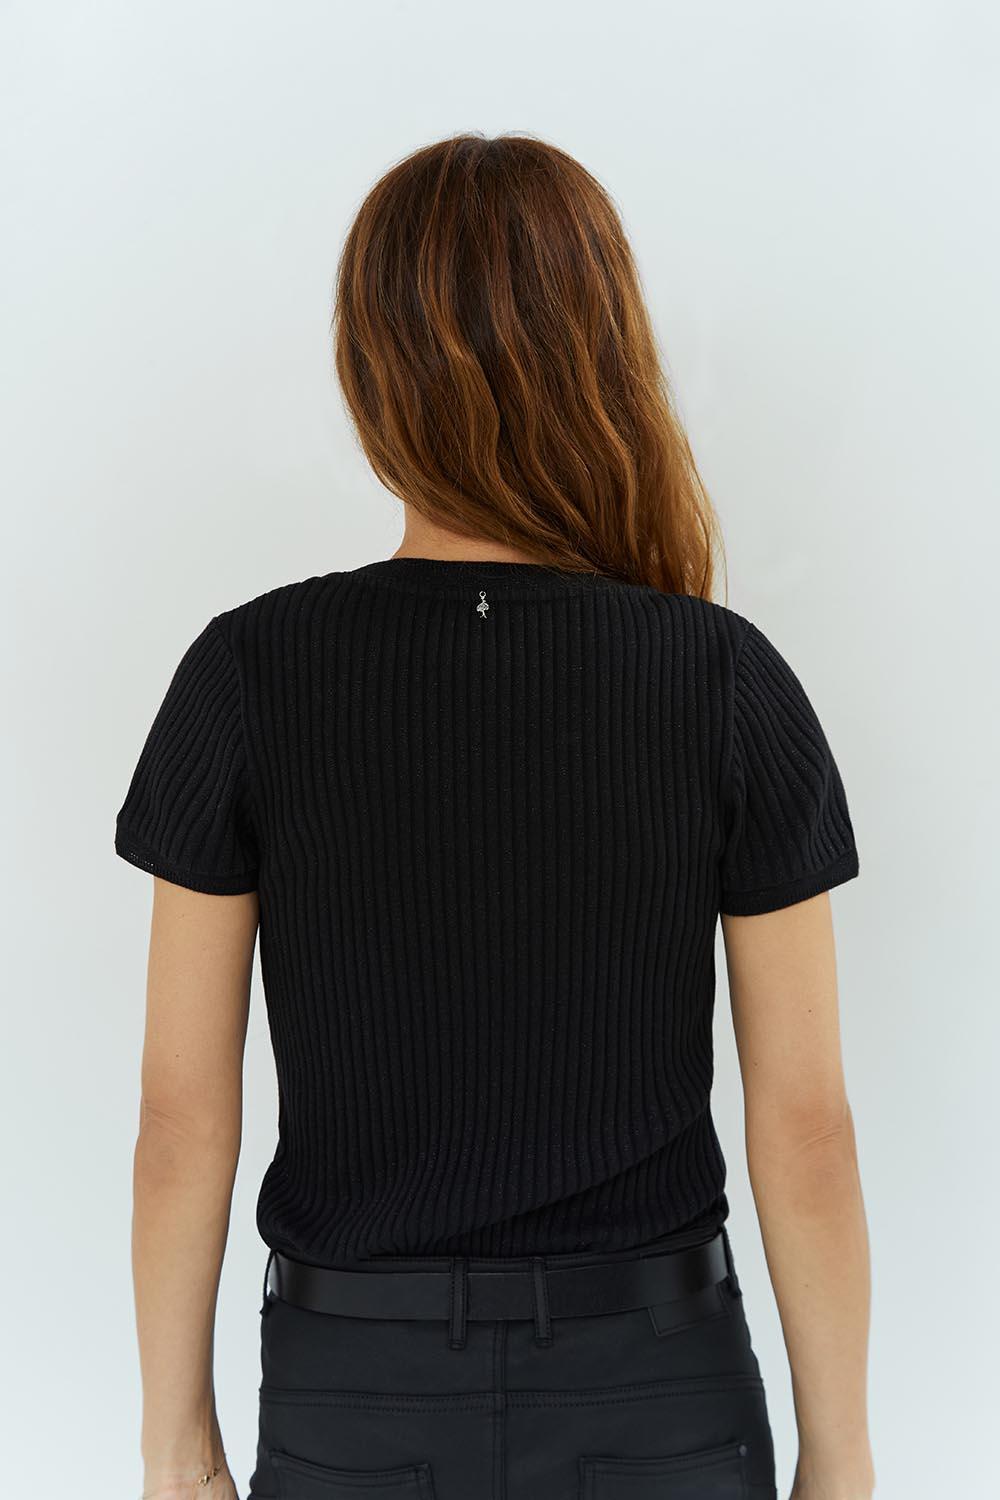 MILES - T-shirt noir tricot côtelé pailleté